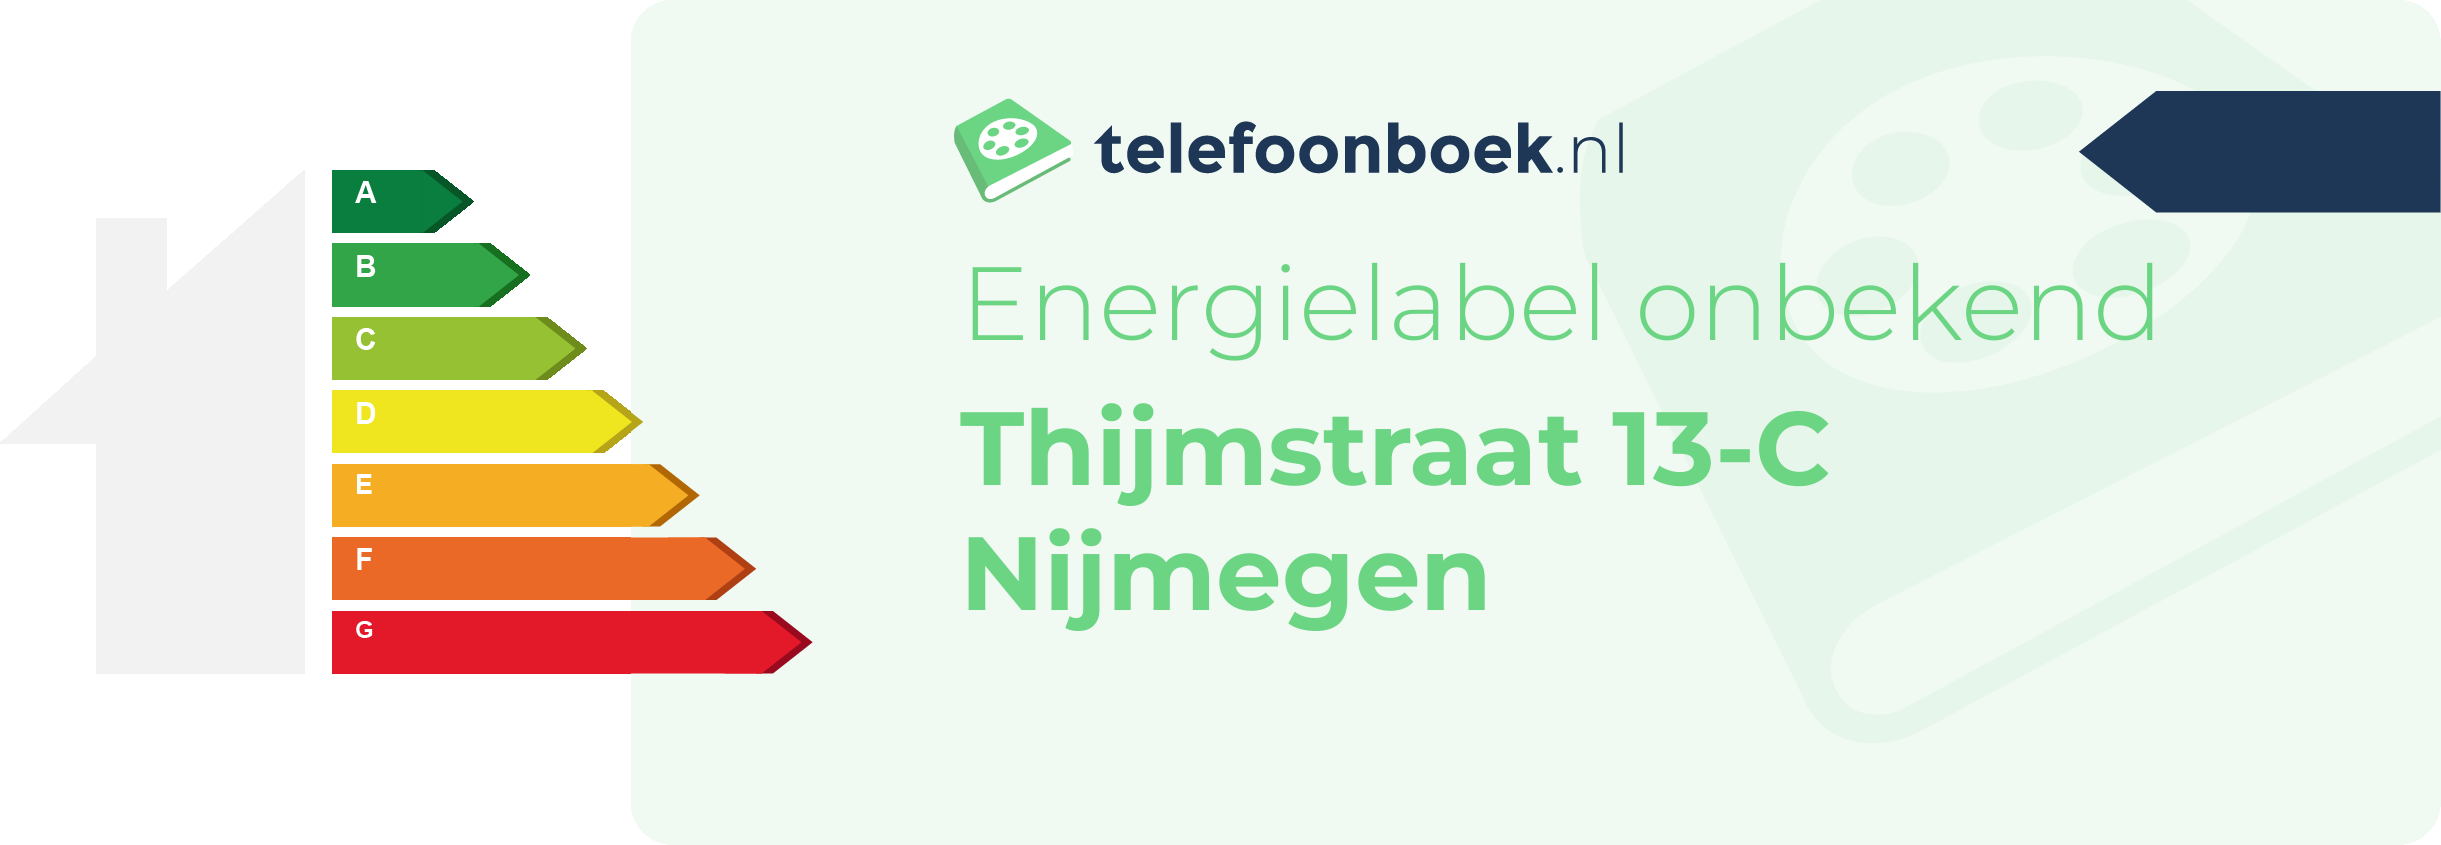 Energielabel Thijmstraat 13-C Nijmegen